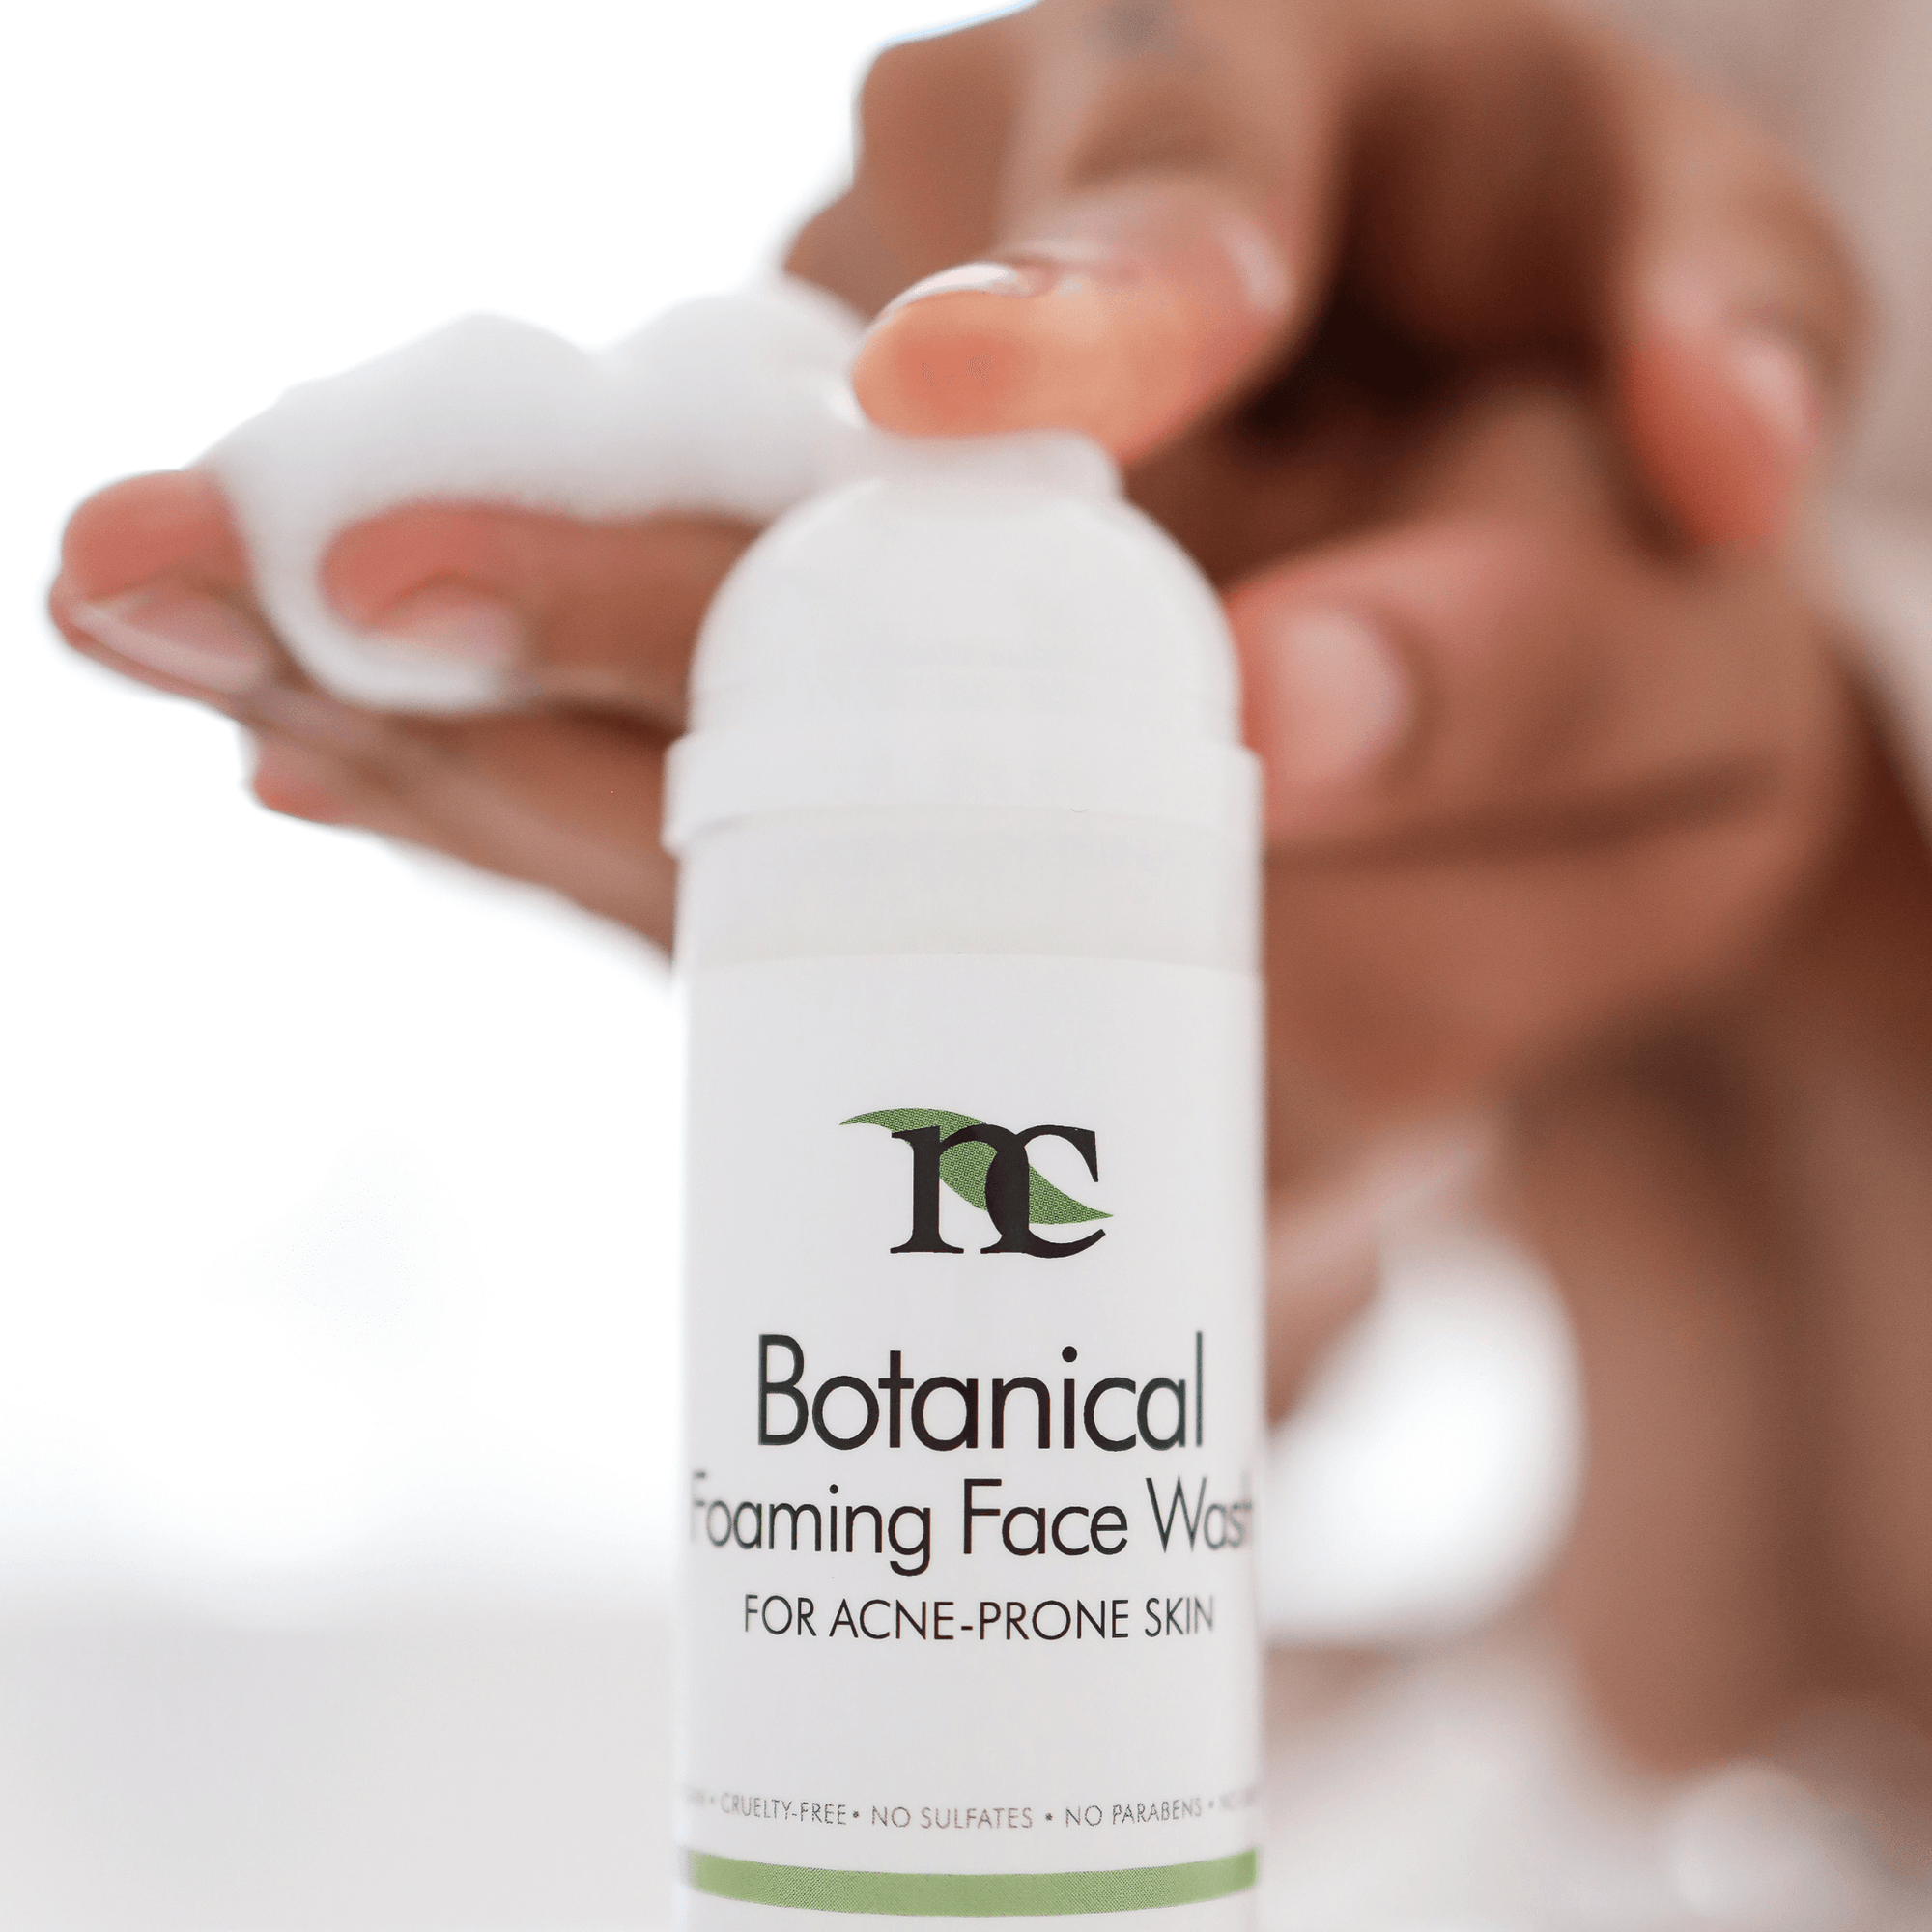 Botanical Face Wash product photo on white background